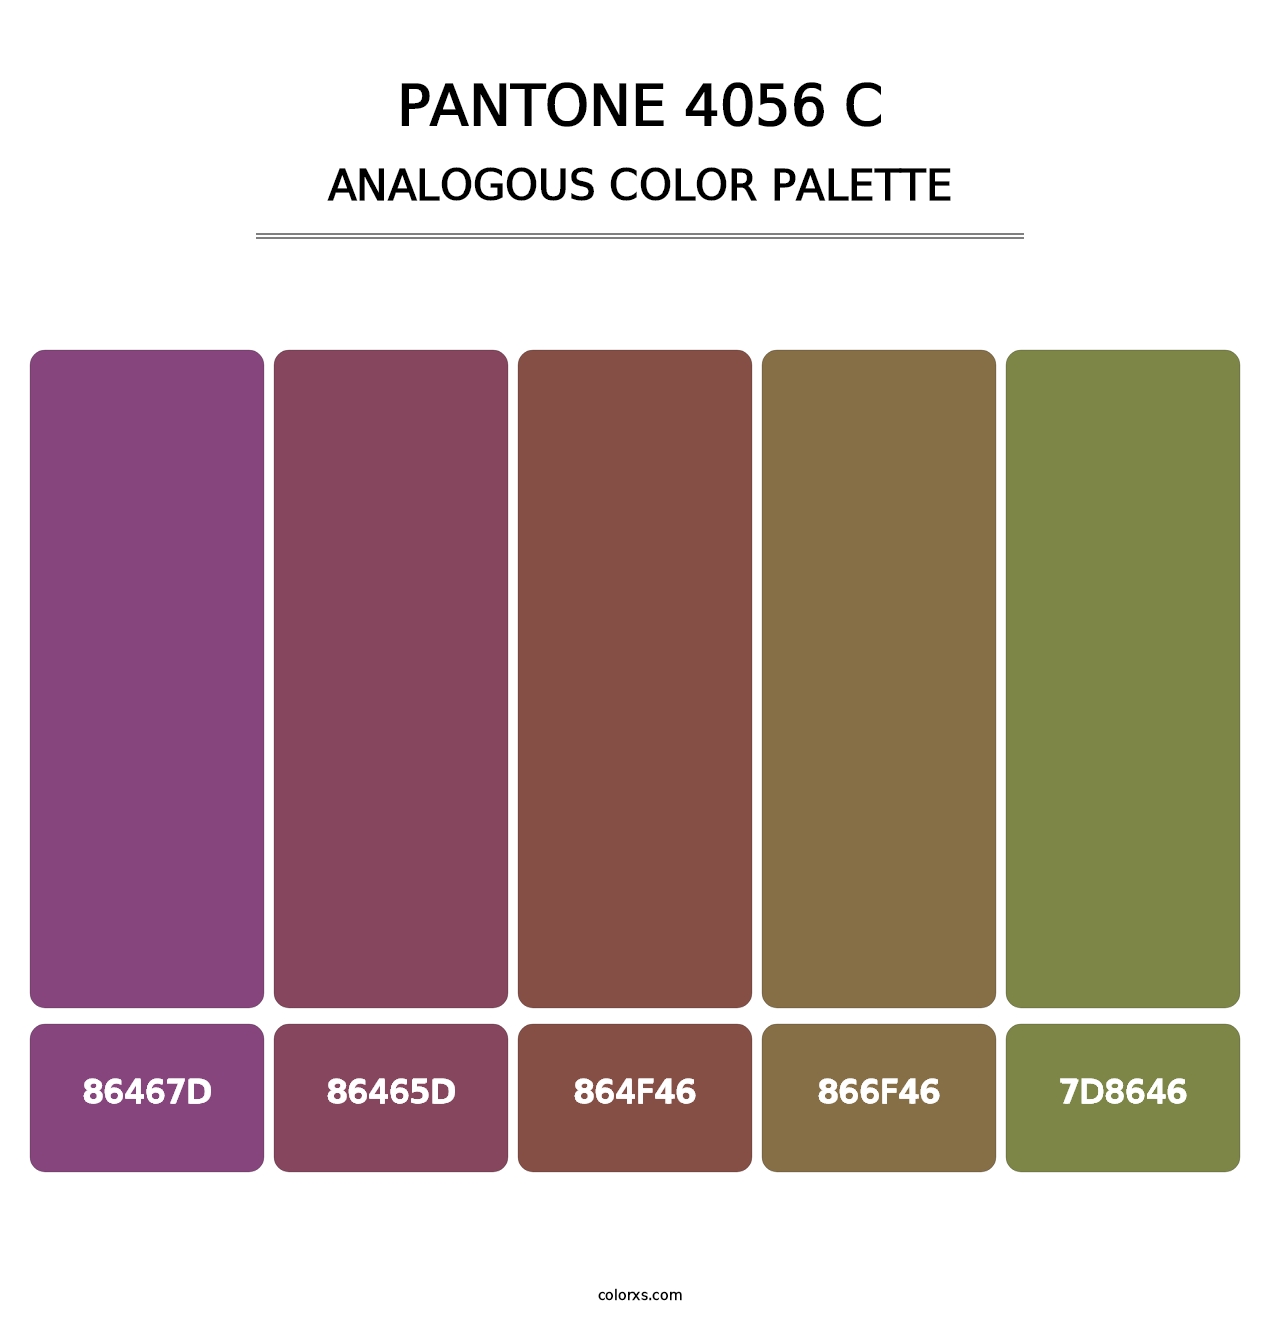 PANTONE 4056 C - Analogous Color Palette